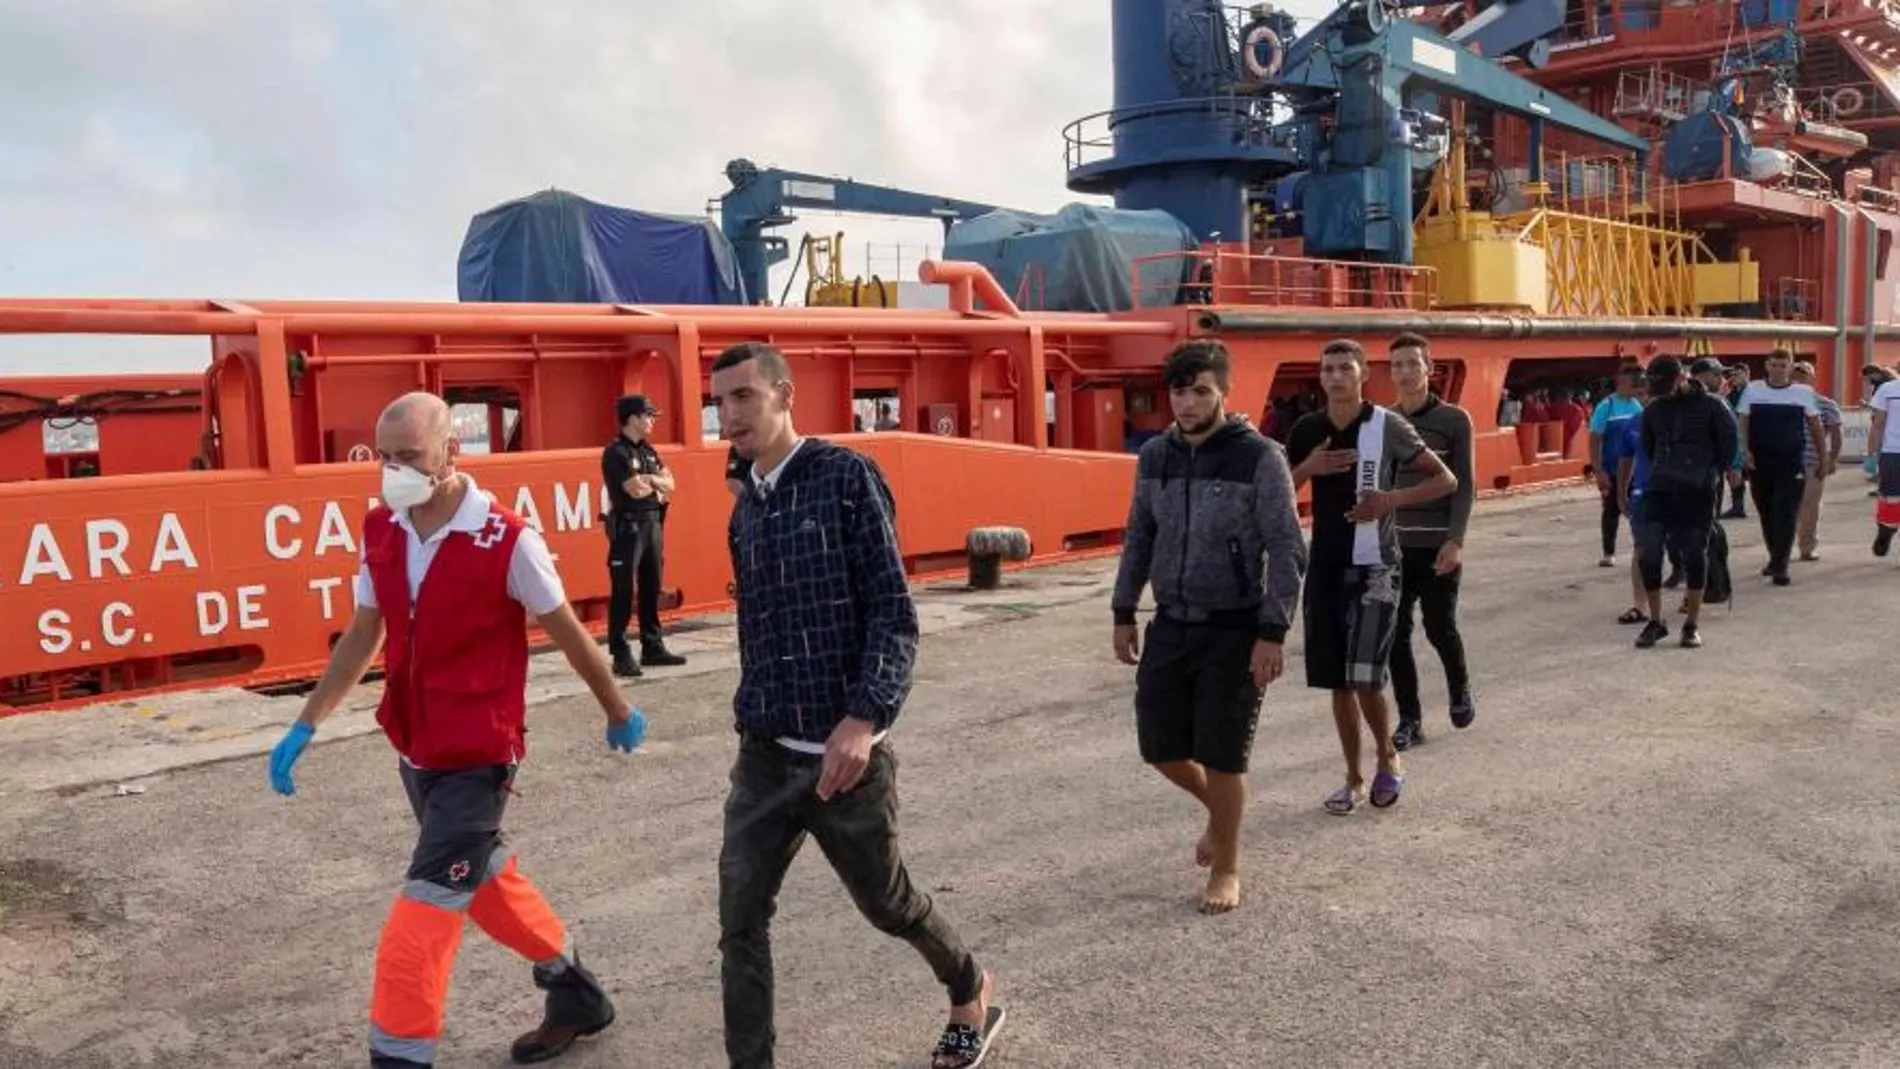 Los equipos de Salvamento Marítimo llevan más de 48 horas trabajando en el rescate de más de 200 personas que han sido interceptadas a bordo de una veintena de pateras en las costas de la Región